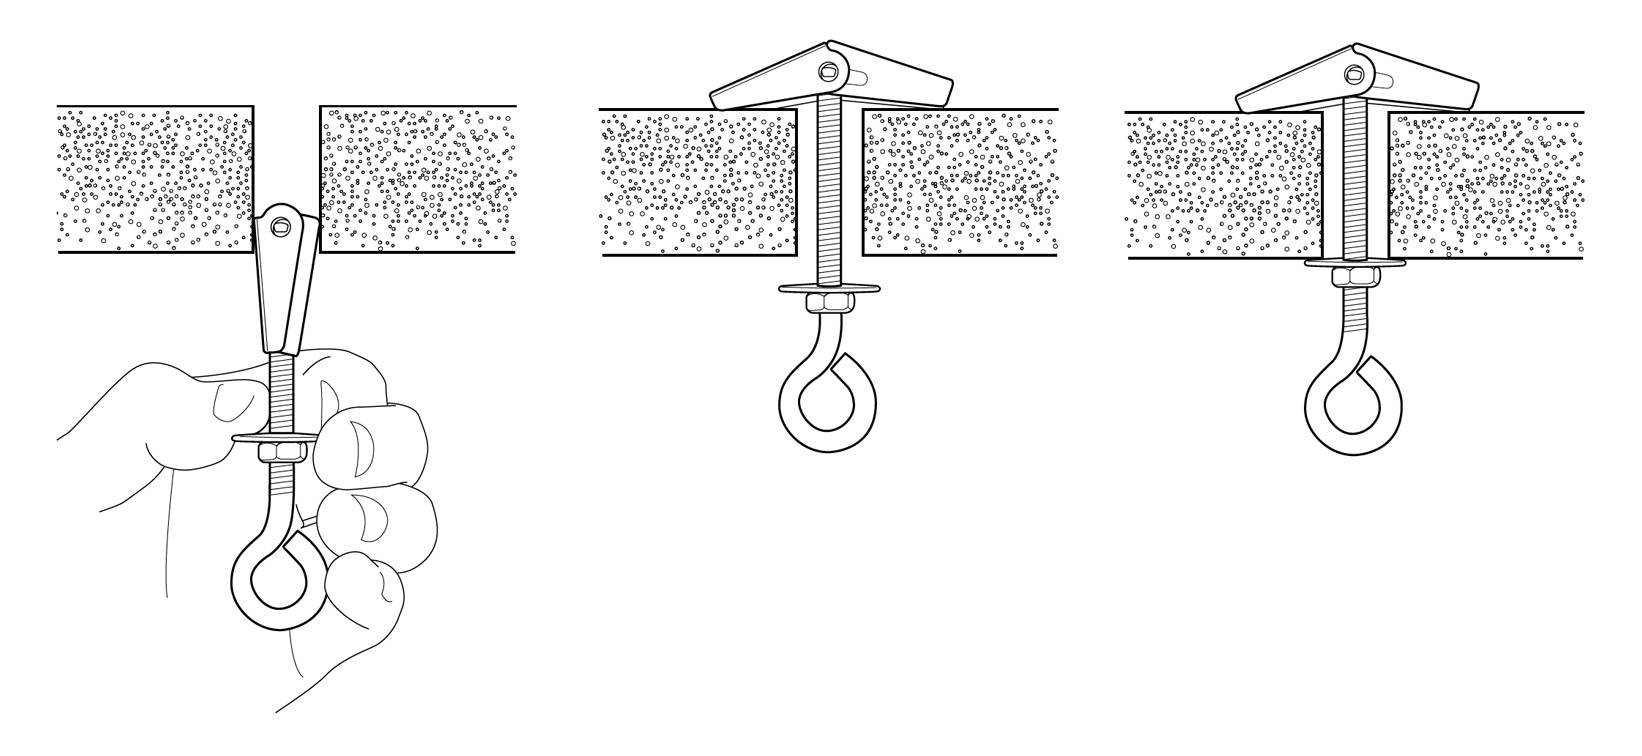 Крепление люстры к потолку различных видов (видео инструкции).